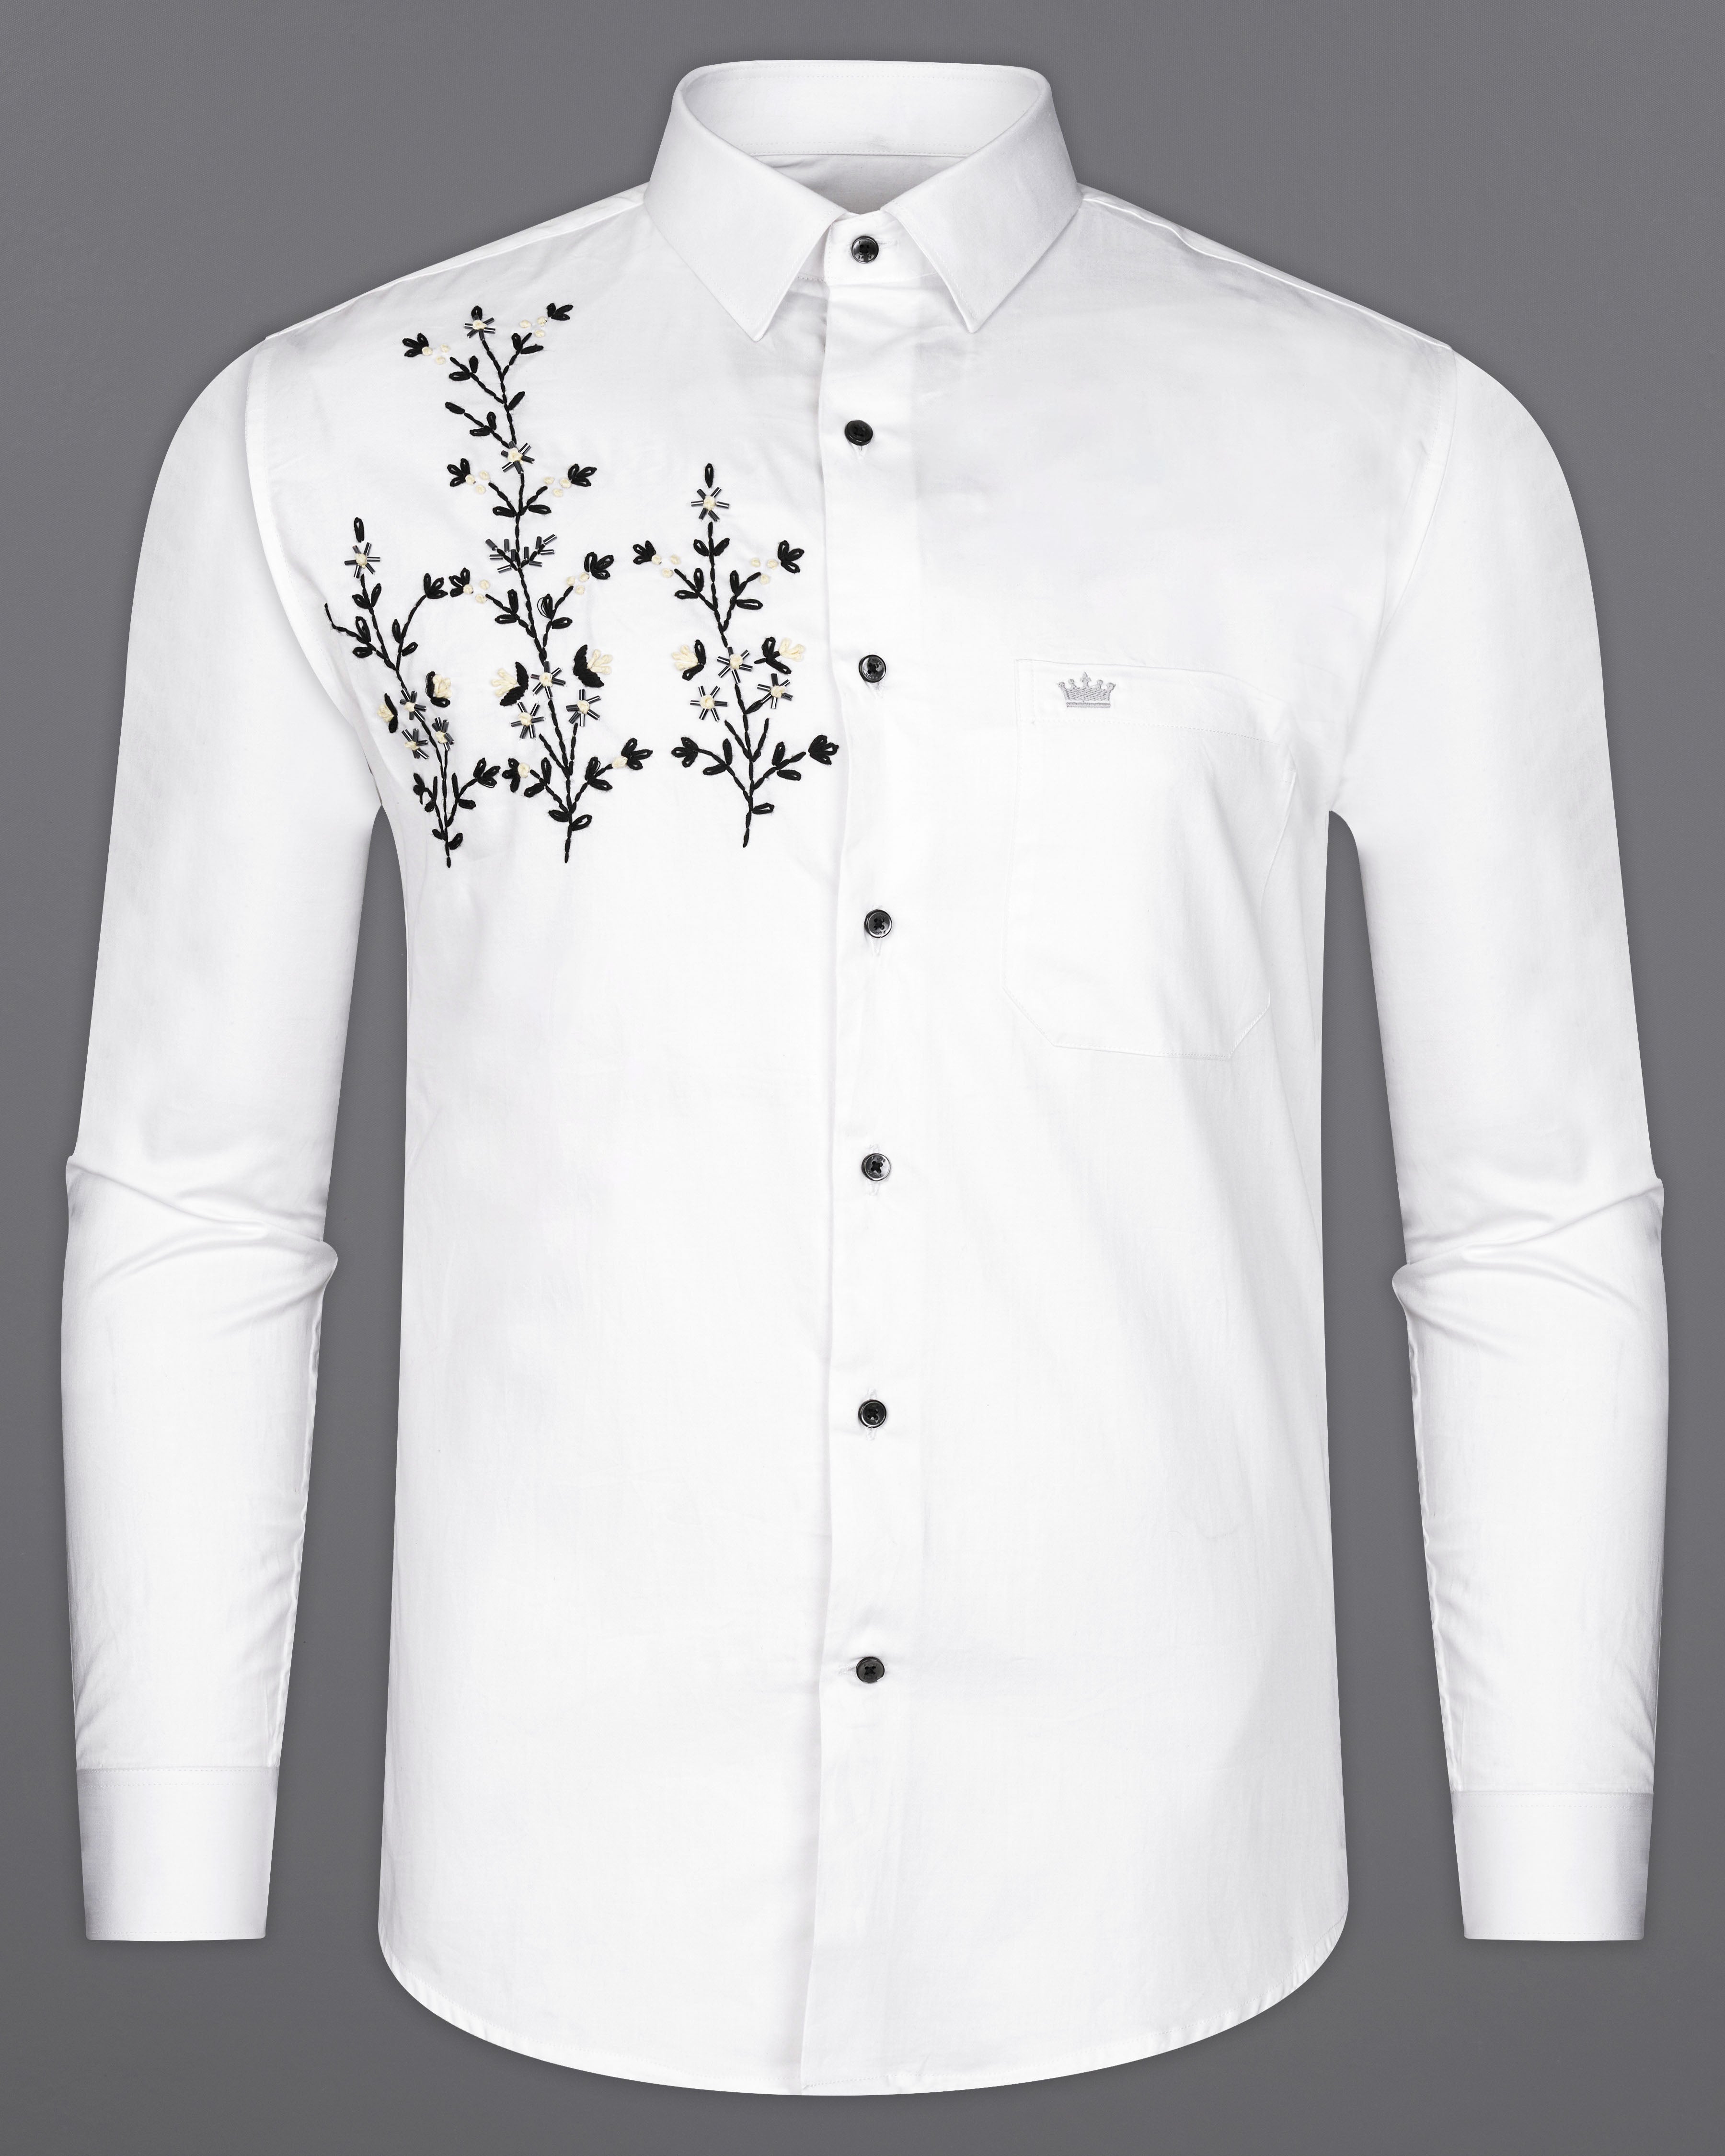 Bright White Leaves Hand Embroidered Super Soft Premium Cotton Designer Shirt 1062-BLK-E053-38, 1062-BLK-E053-H-38, 1062-BLK-E053-39, 1062-BLK-E053-H-39, 1062-BLK-E053-40, 1062-BLK-E053-H-40, 1062-BLK-E053-42, 1062-BLK-E053-H-42, 1062-BLK-E053-44, 1062-BLK-E053-H-44, 1062-BLK-E053-46, 1062-BLK-E053-H-46, 1062-BLK-E053-48, 1062-BLK-E053-H-48, 1062-BLK-E053-50, 1062-BLK-E053-H-50, 1062-BLK-E053-52, 1062-BLK-E053-H-52